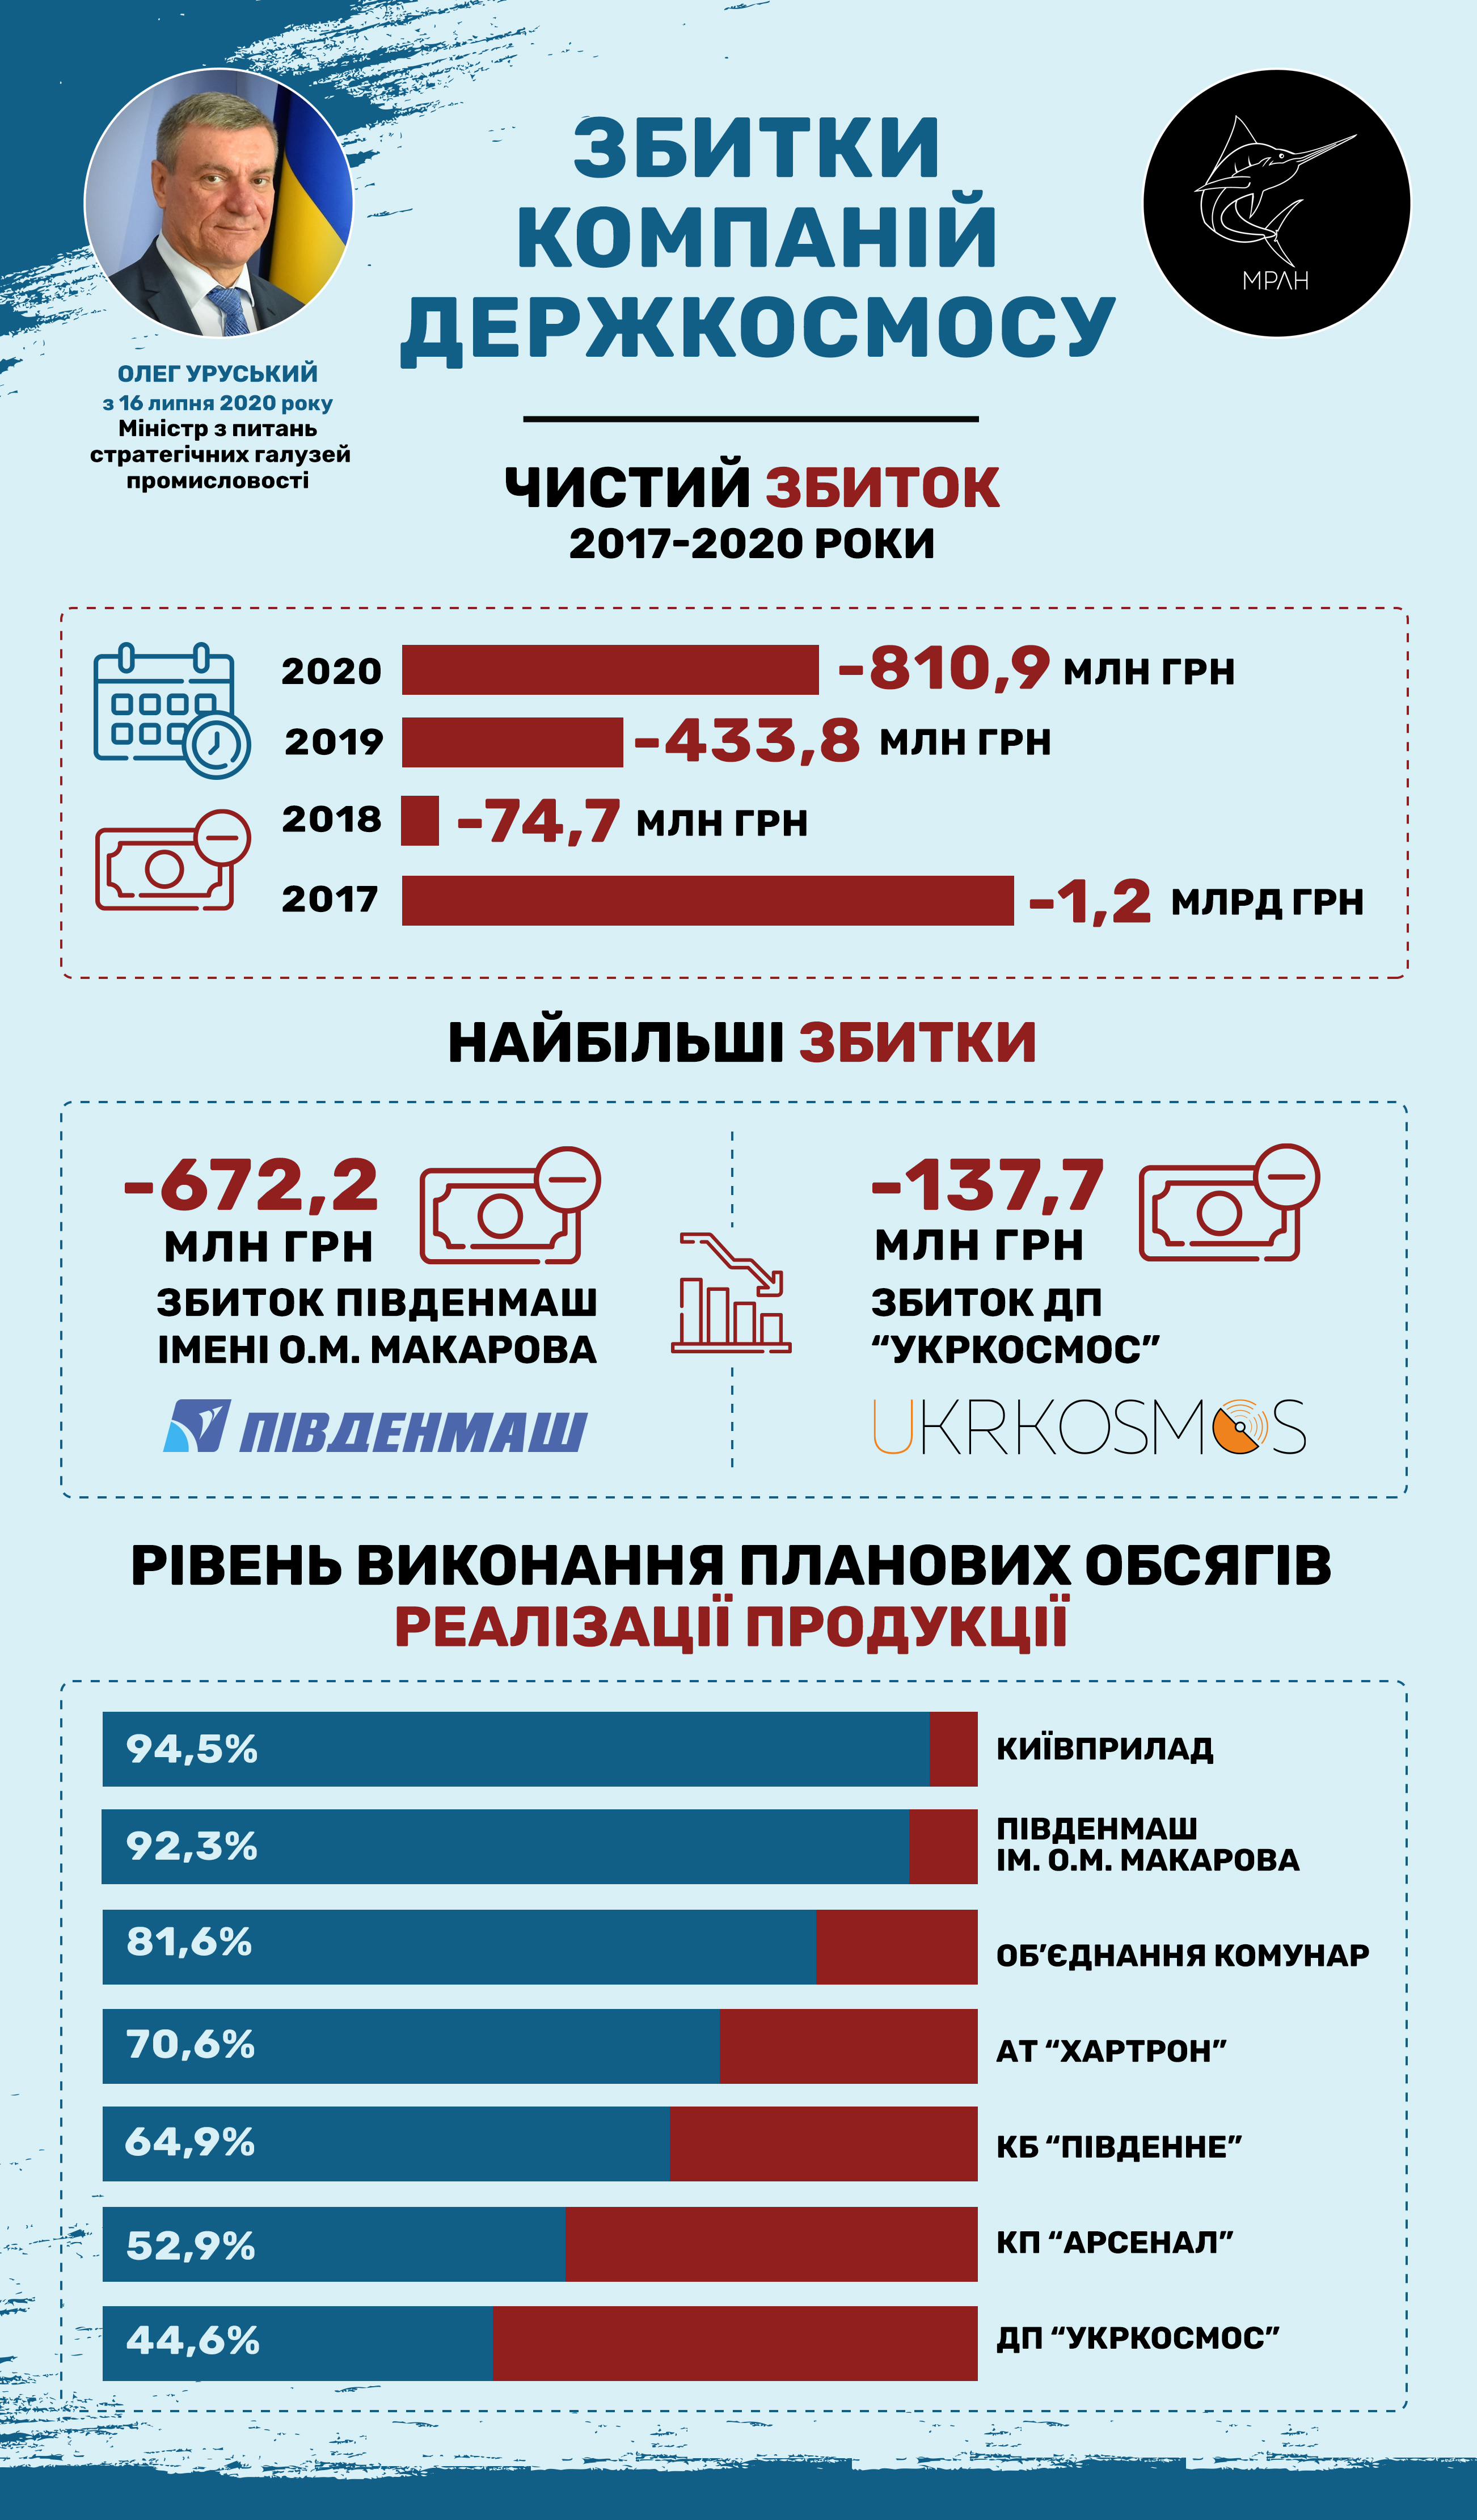 Фінансові показники підприємств Держкосмосу за 2020 рік